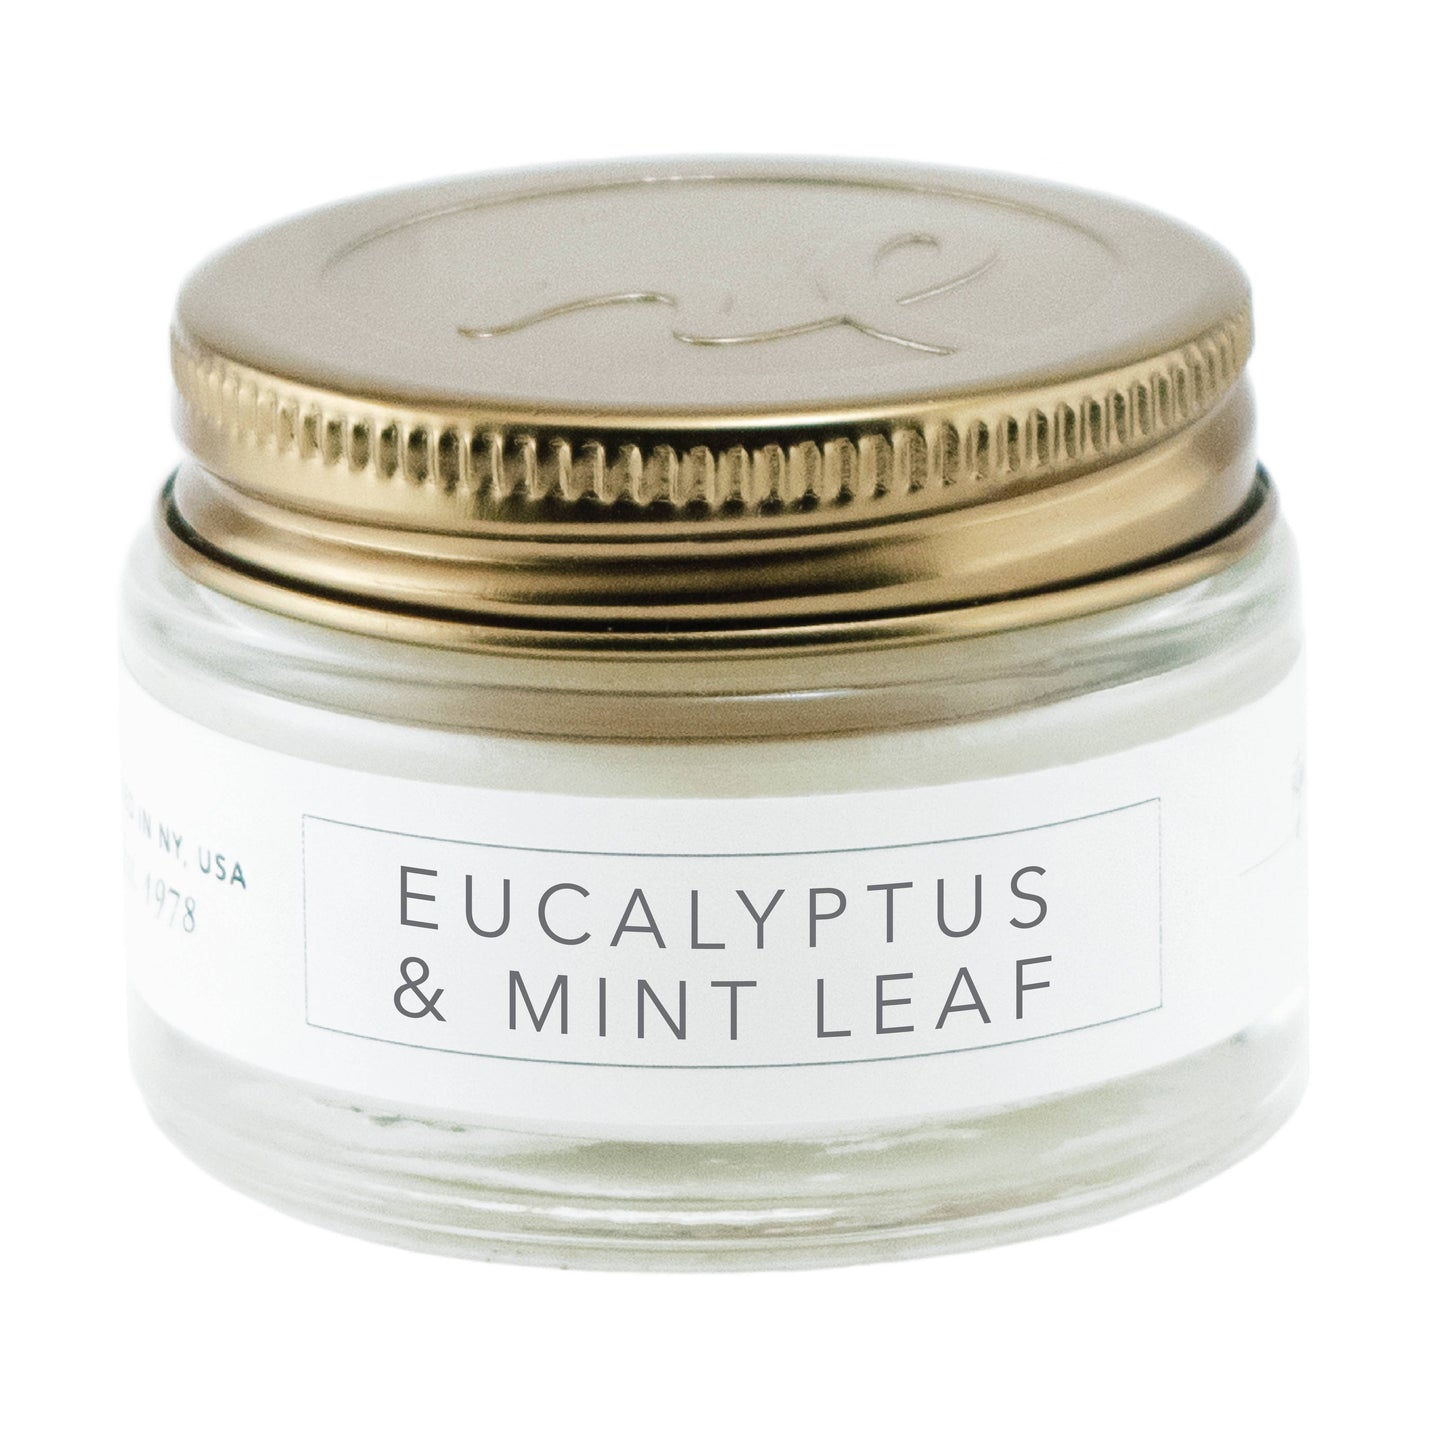 1 oz Candles: Eucalyptus & Mint Leaf